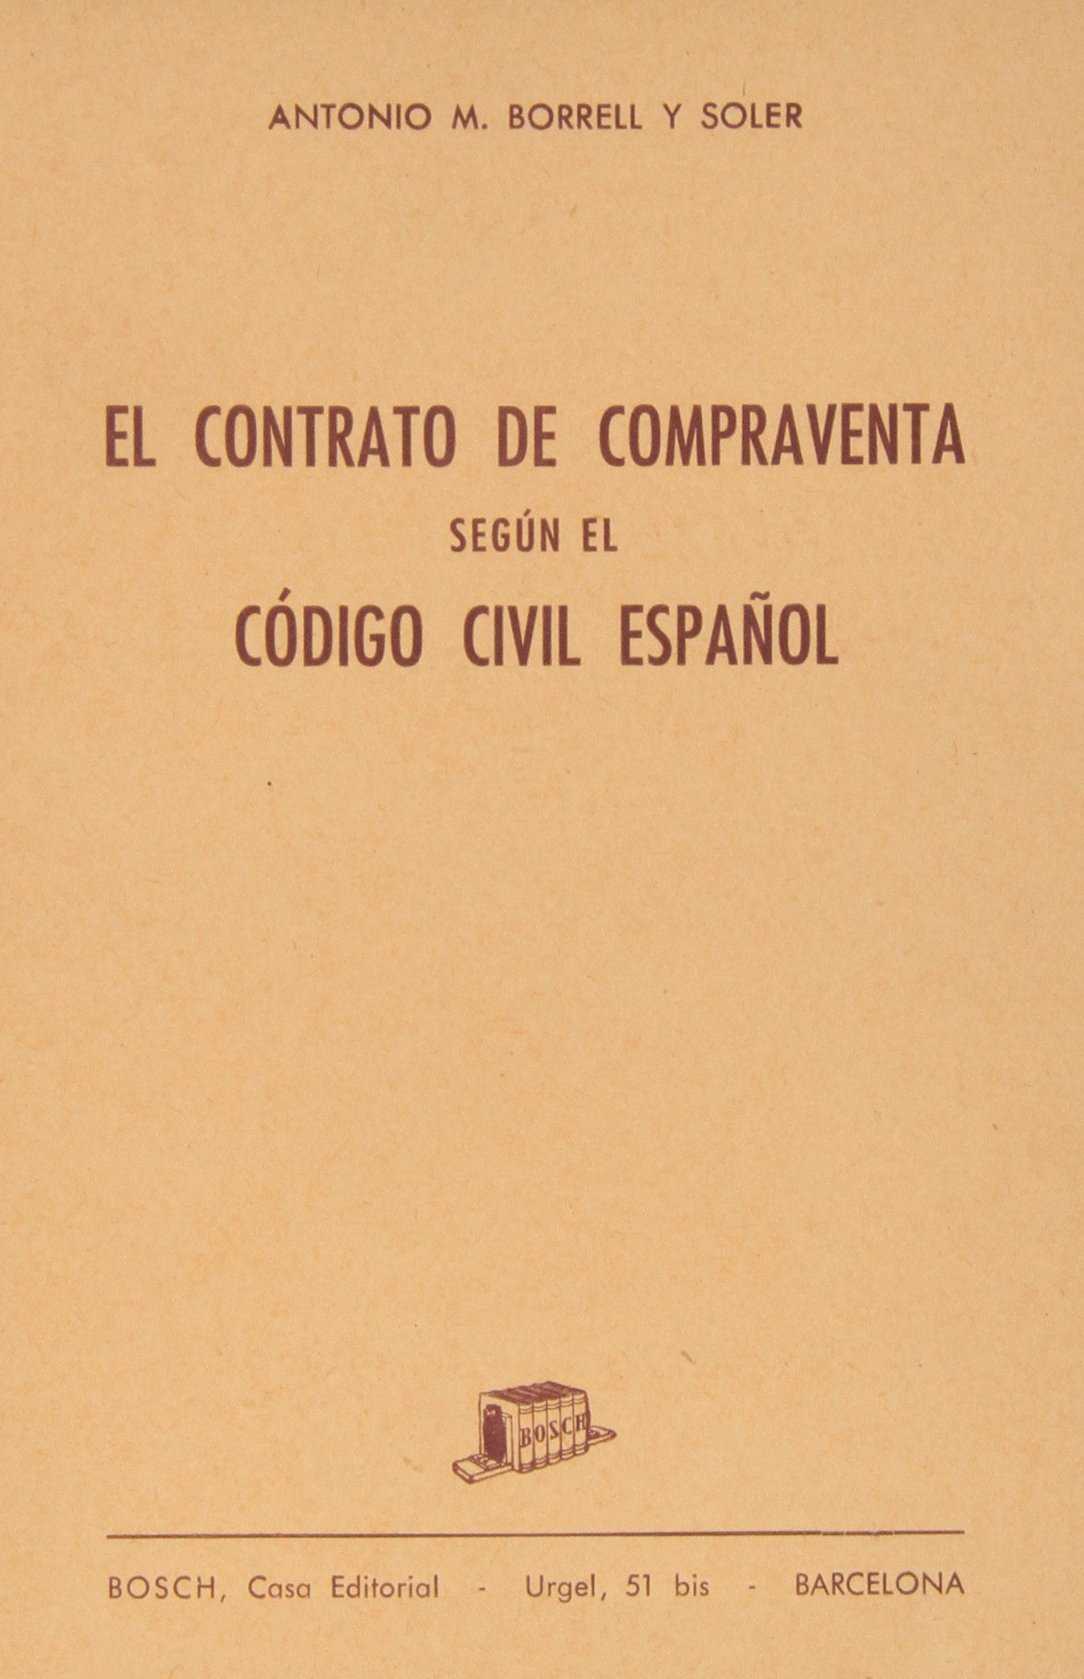 El Contrato de compraventa según el Código civil español